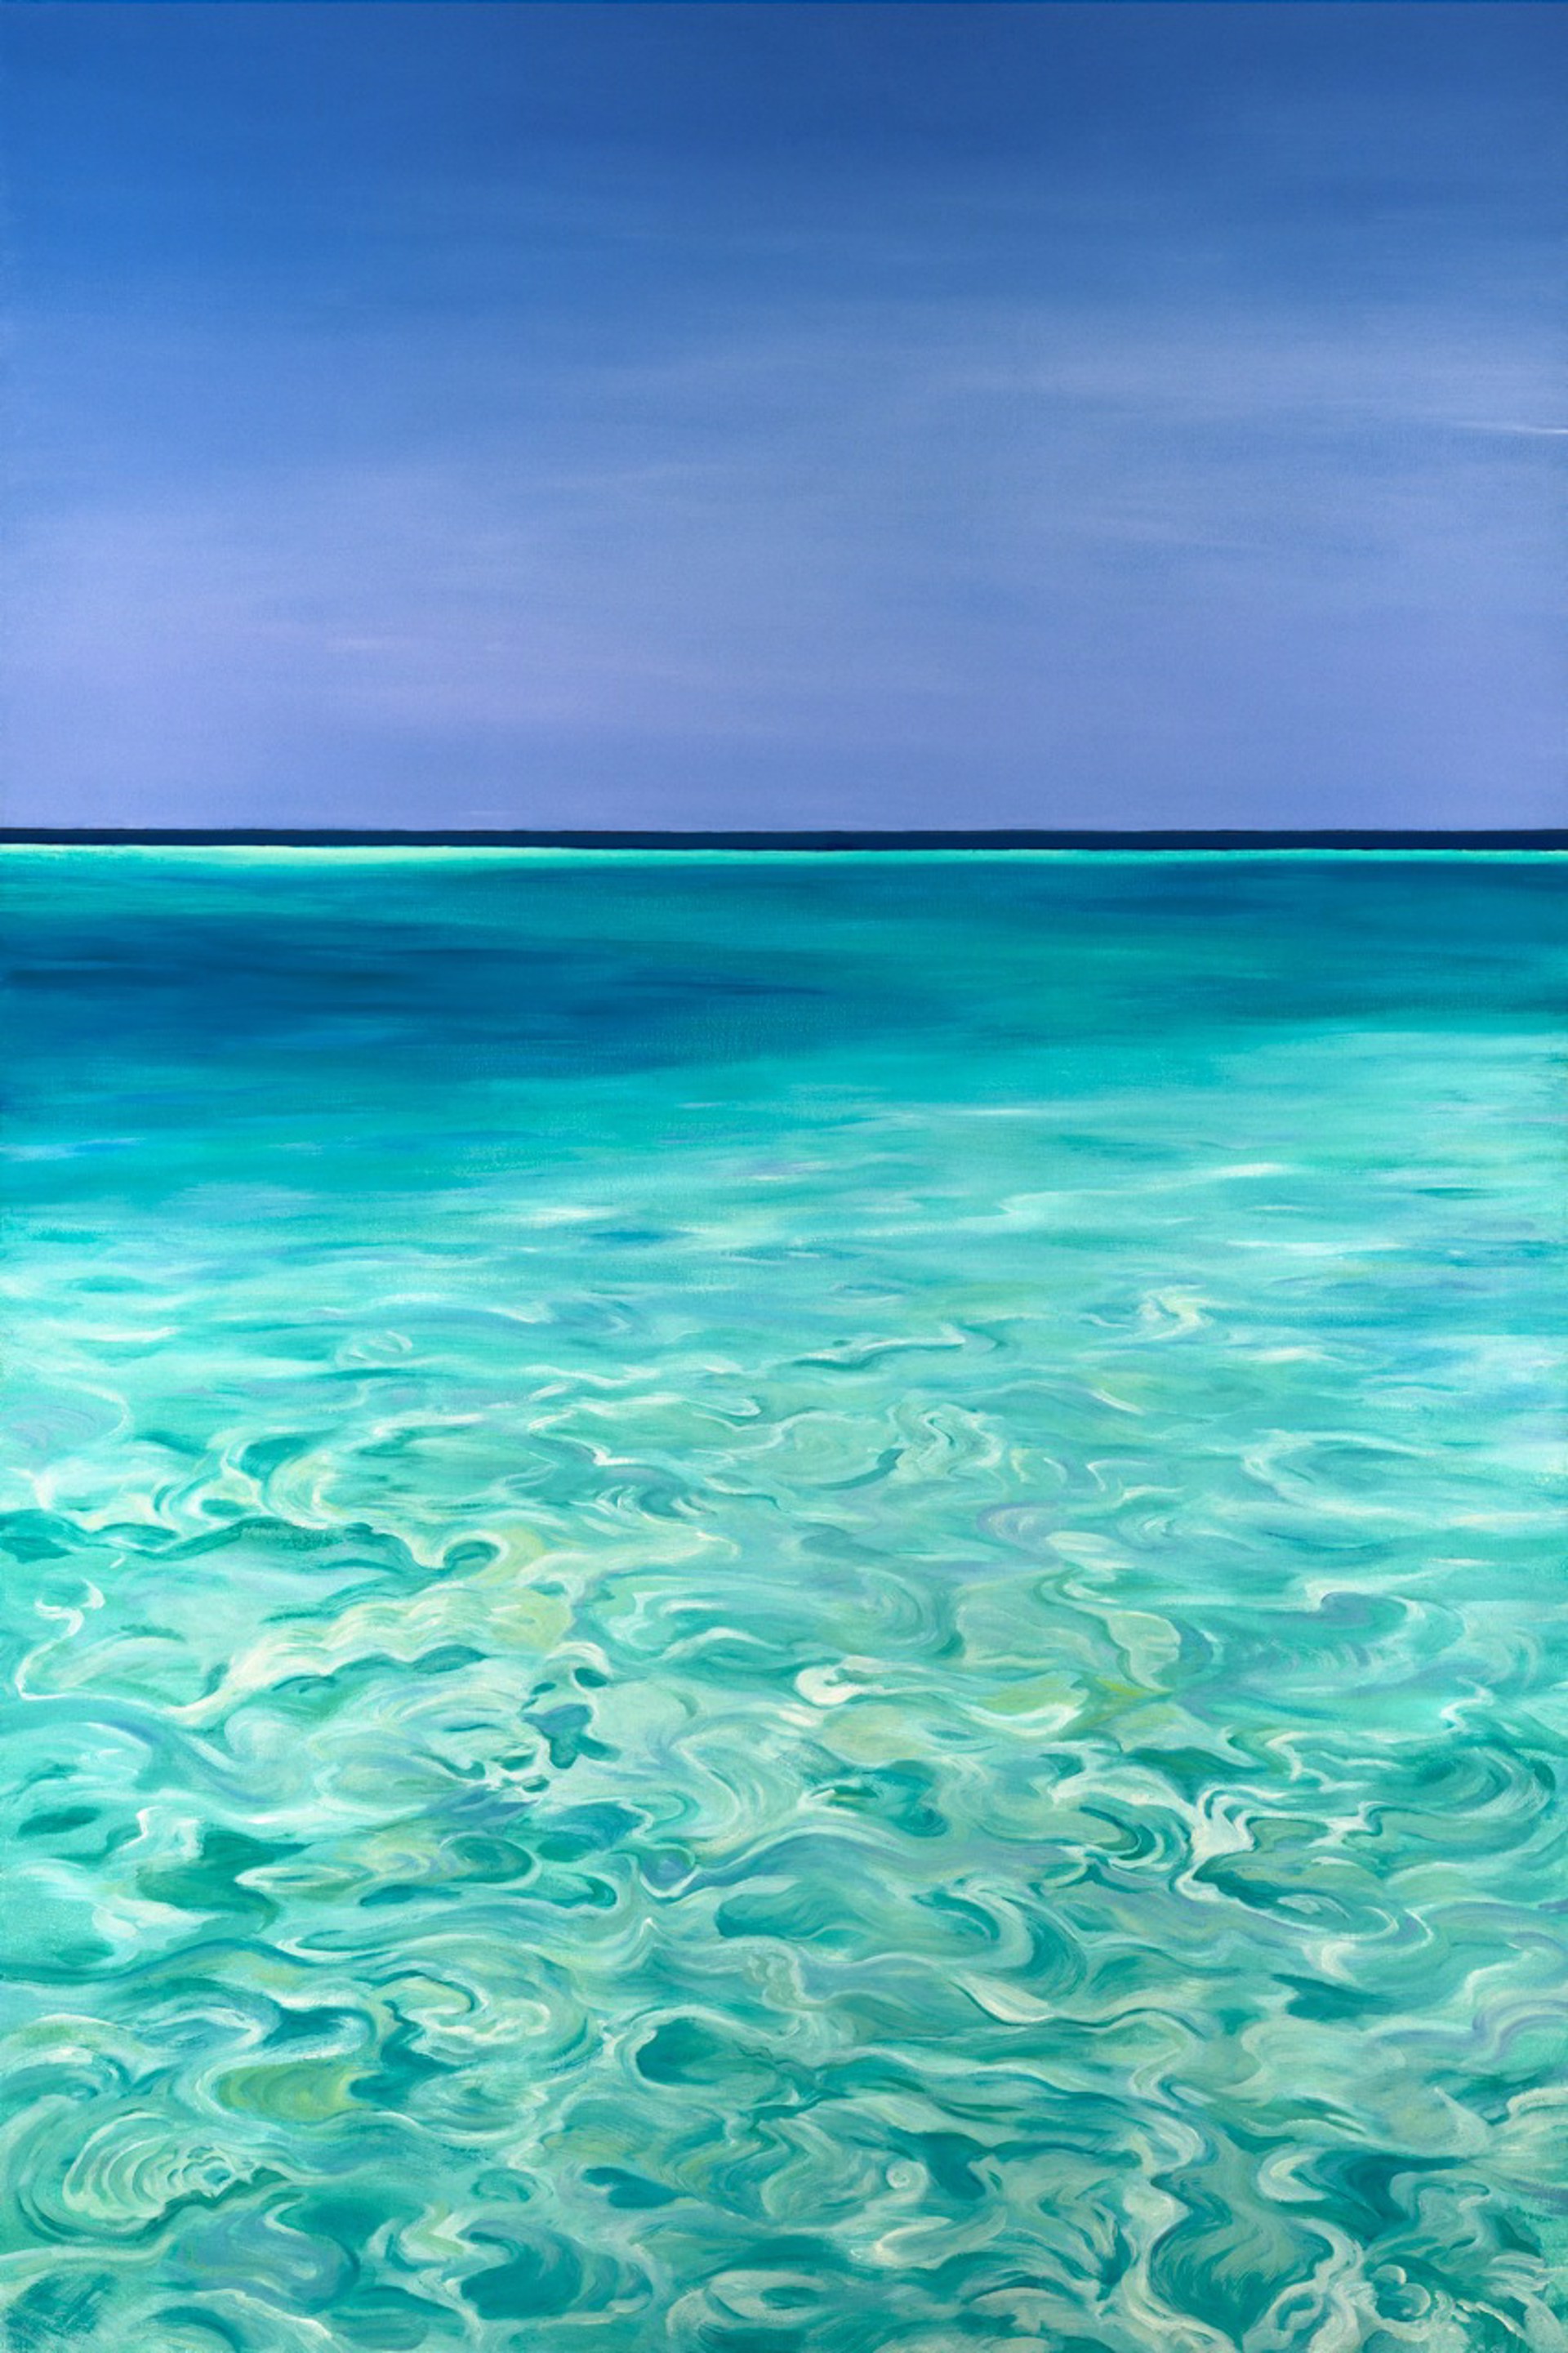 La Mer by Joelle C.